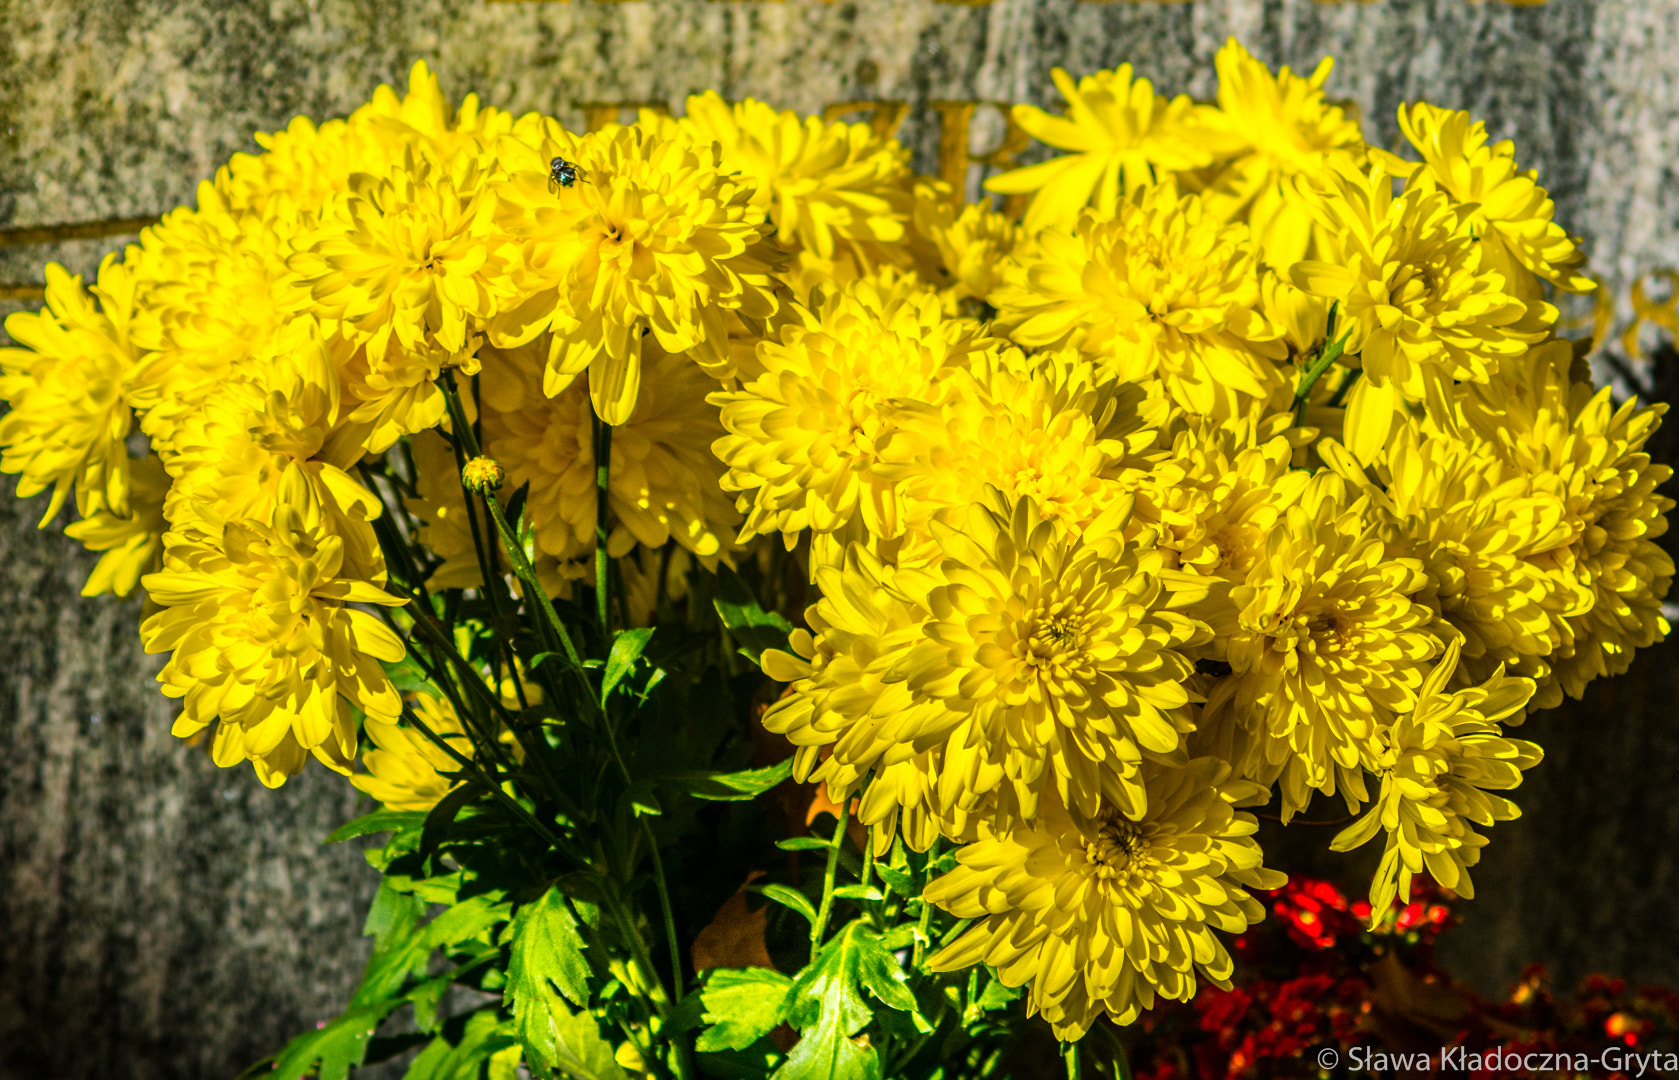 Nikon D7100 + AF Zoom-Nikkor 70-210mm f/4 sample photo. Flowers photography